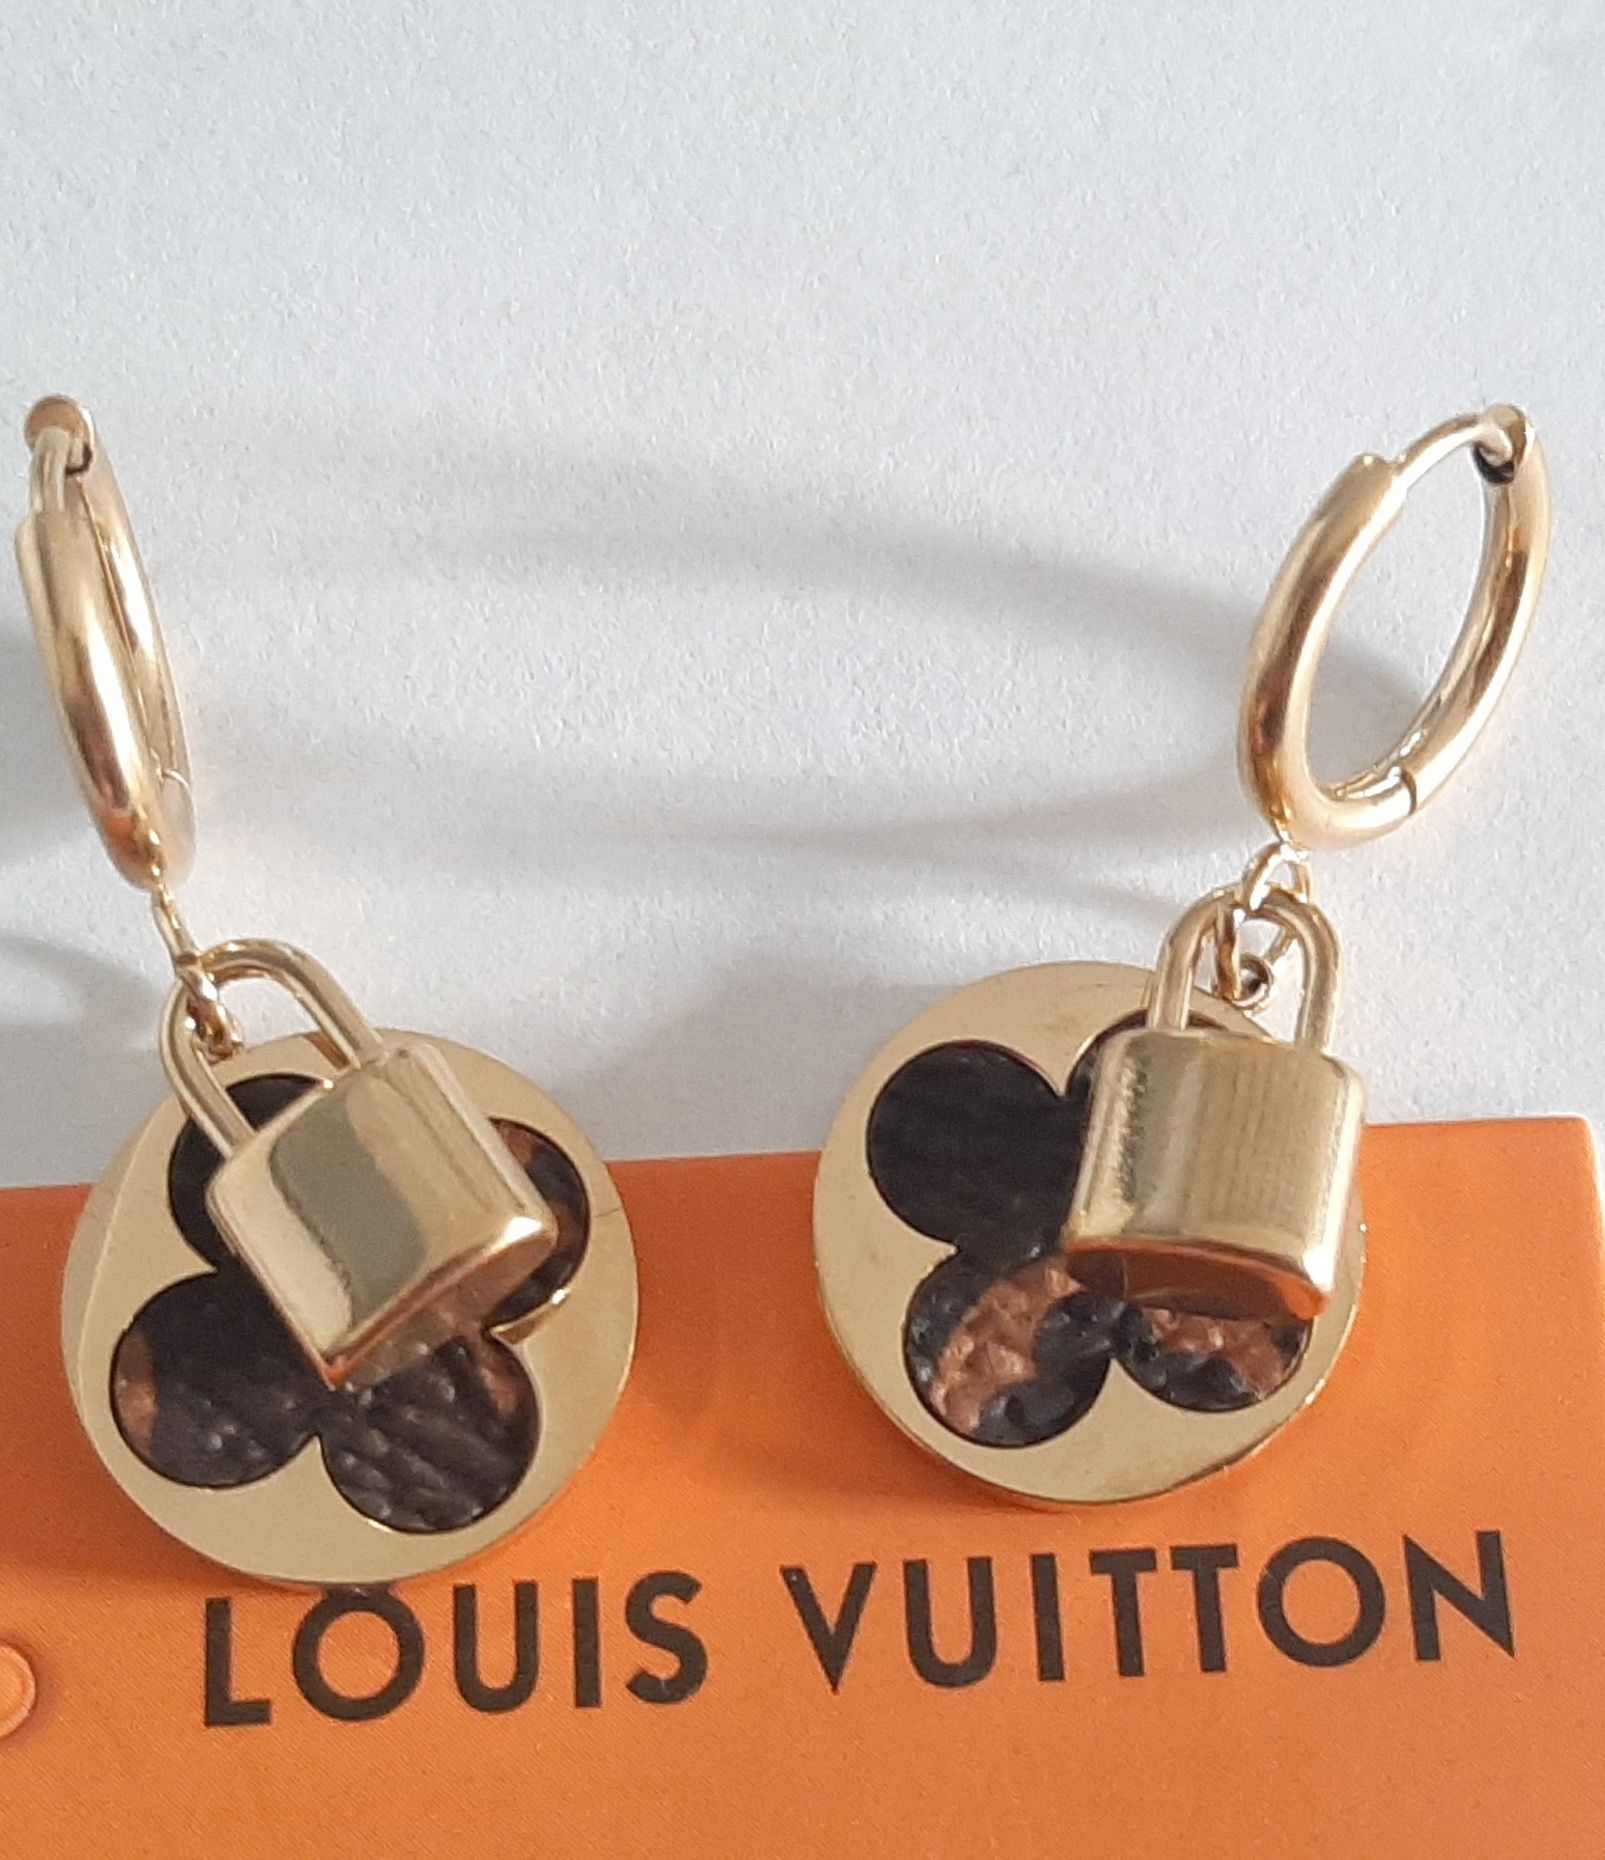 Złote wiszące kolczyki wzór Louis Vuitton Cudo